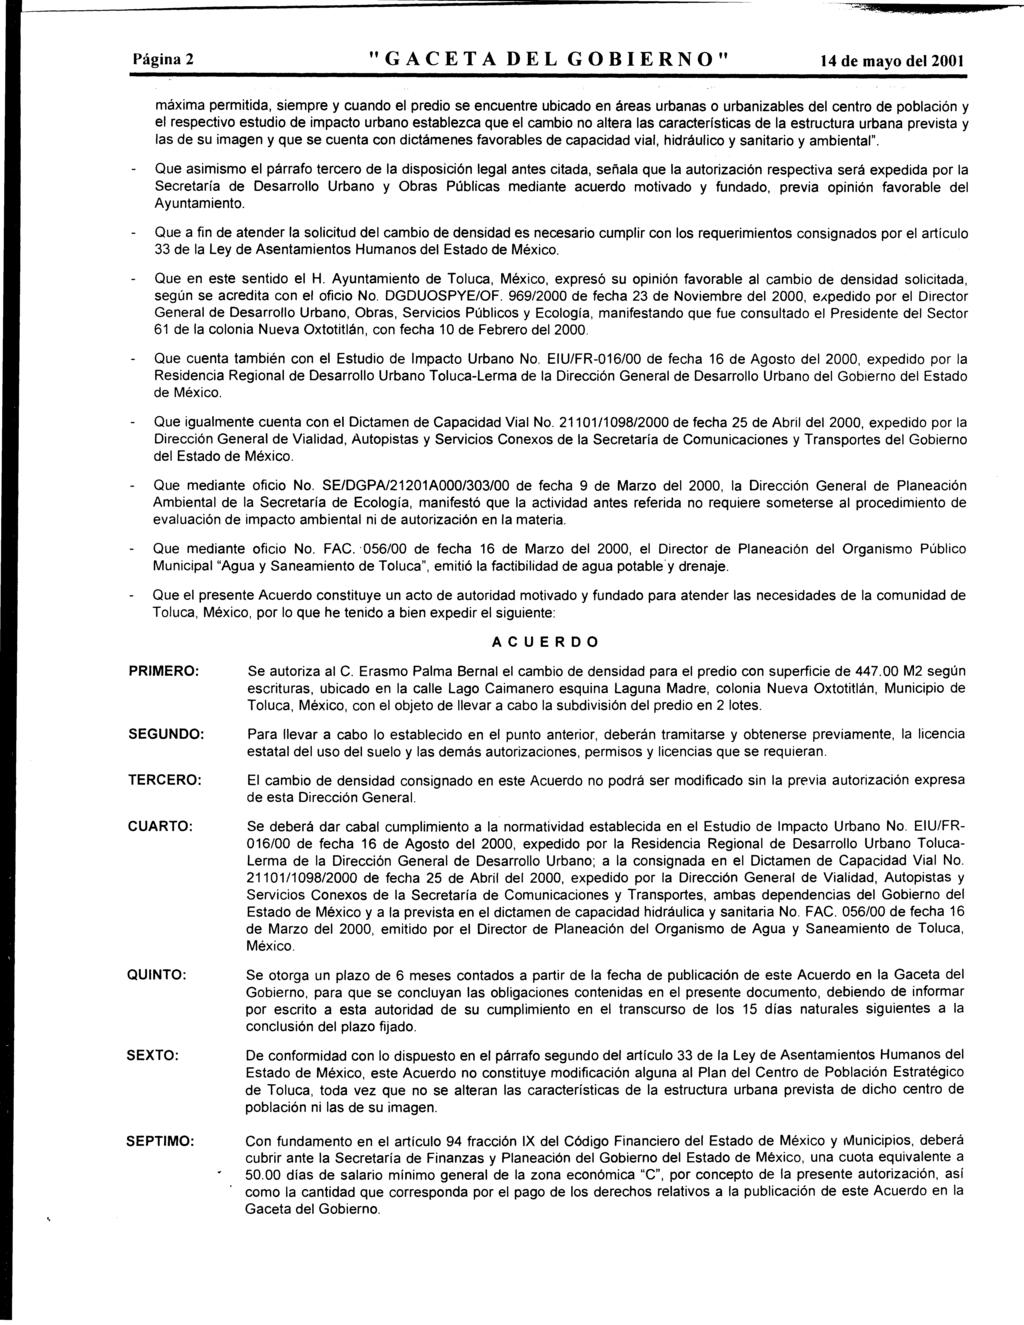 - Página 2 "GACETA DEL GOBIERNO" 14 de may del 2001 máxima permitida, siempre y cuand el predi se encuentre ubicad en áreas urbanas urbanizables del centr de pblación y el respectiv estudi de impact